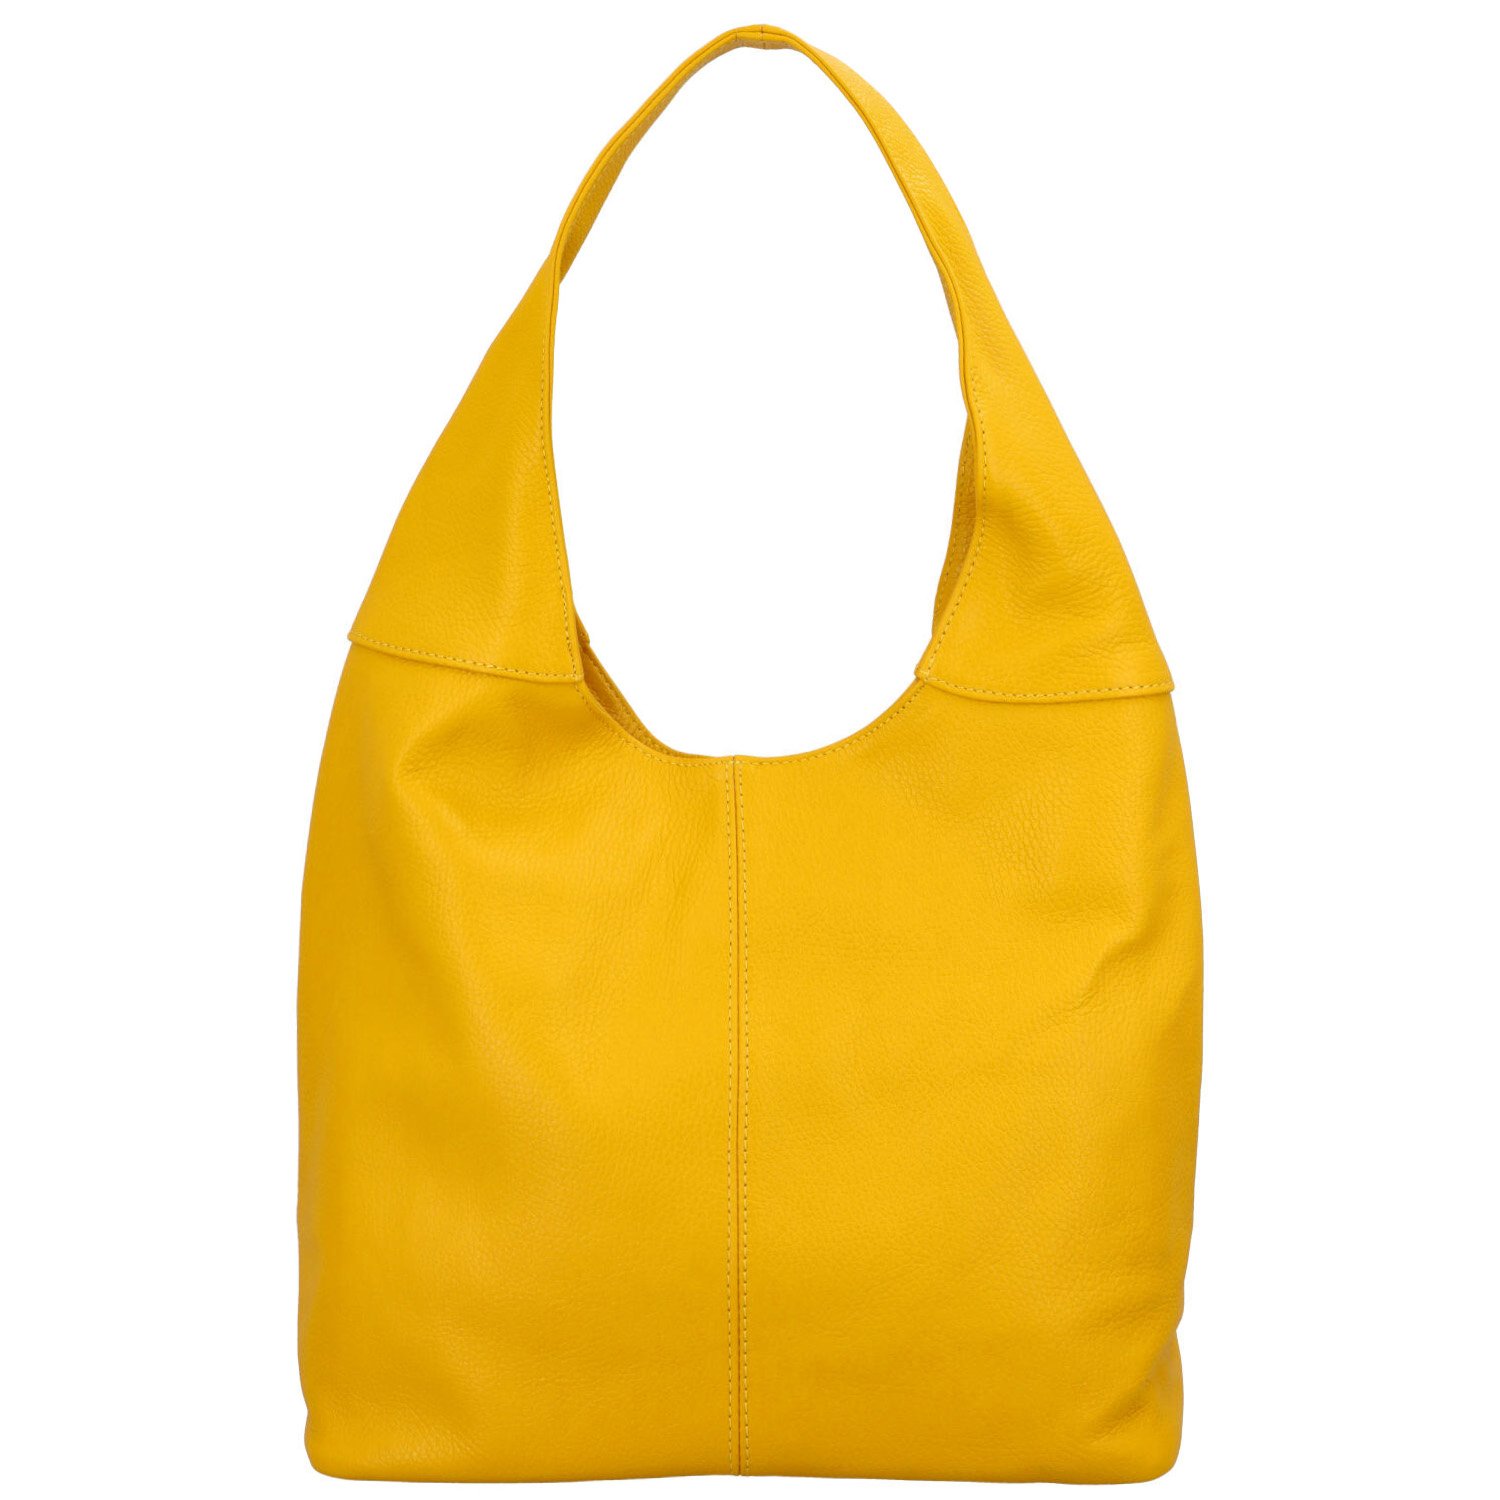 Dámská kožená kabelka přes rameno žlutá - ItalY SkyFull